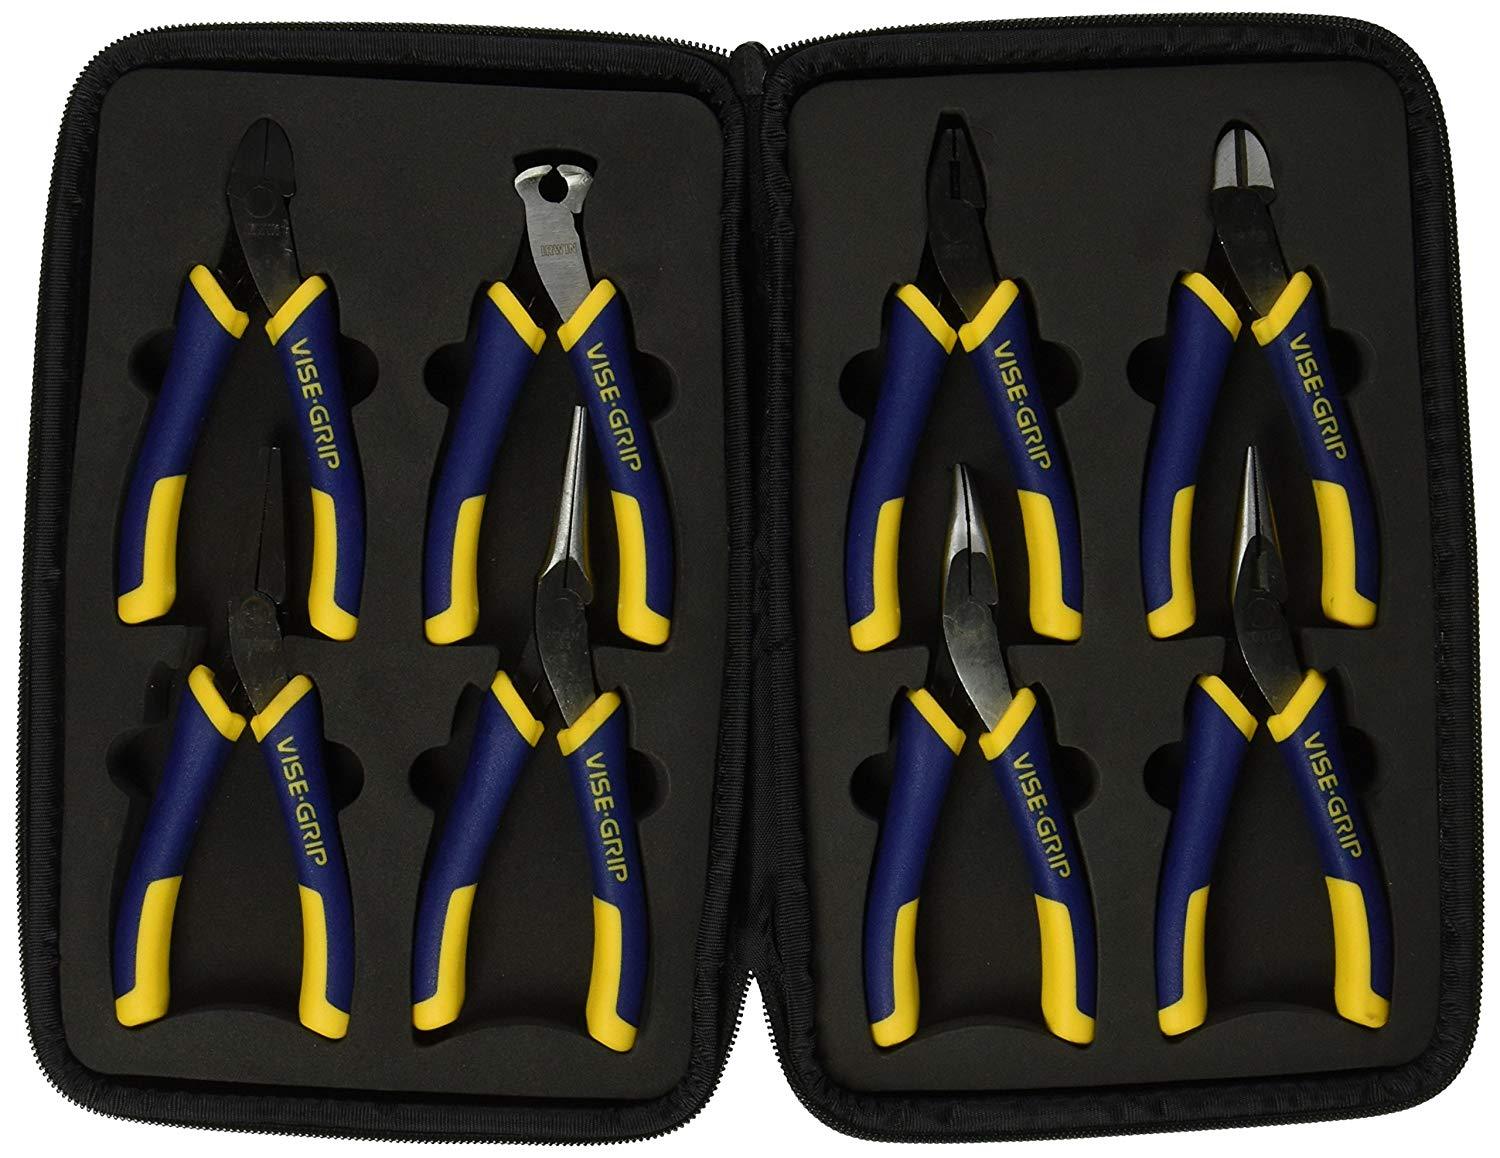 Irwin 8pc. Vise-Grip Mini Pliers Case Set 2078714